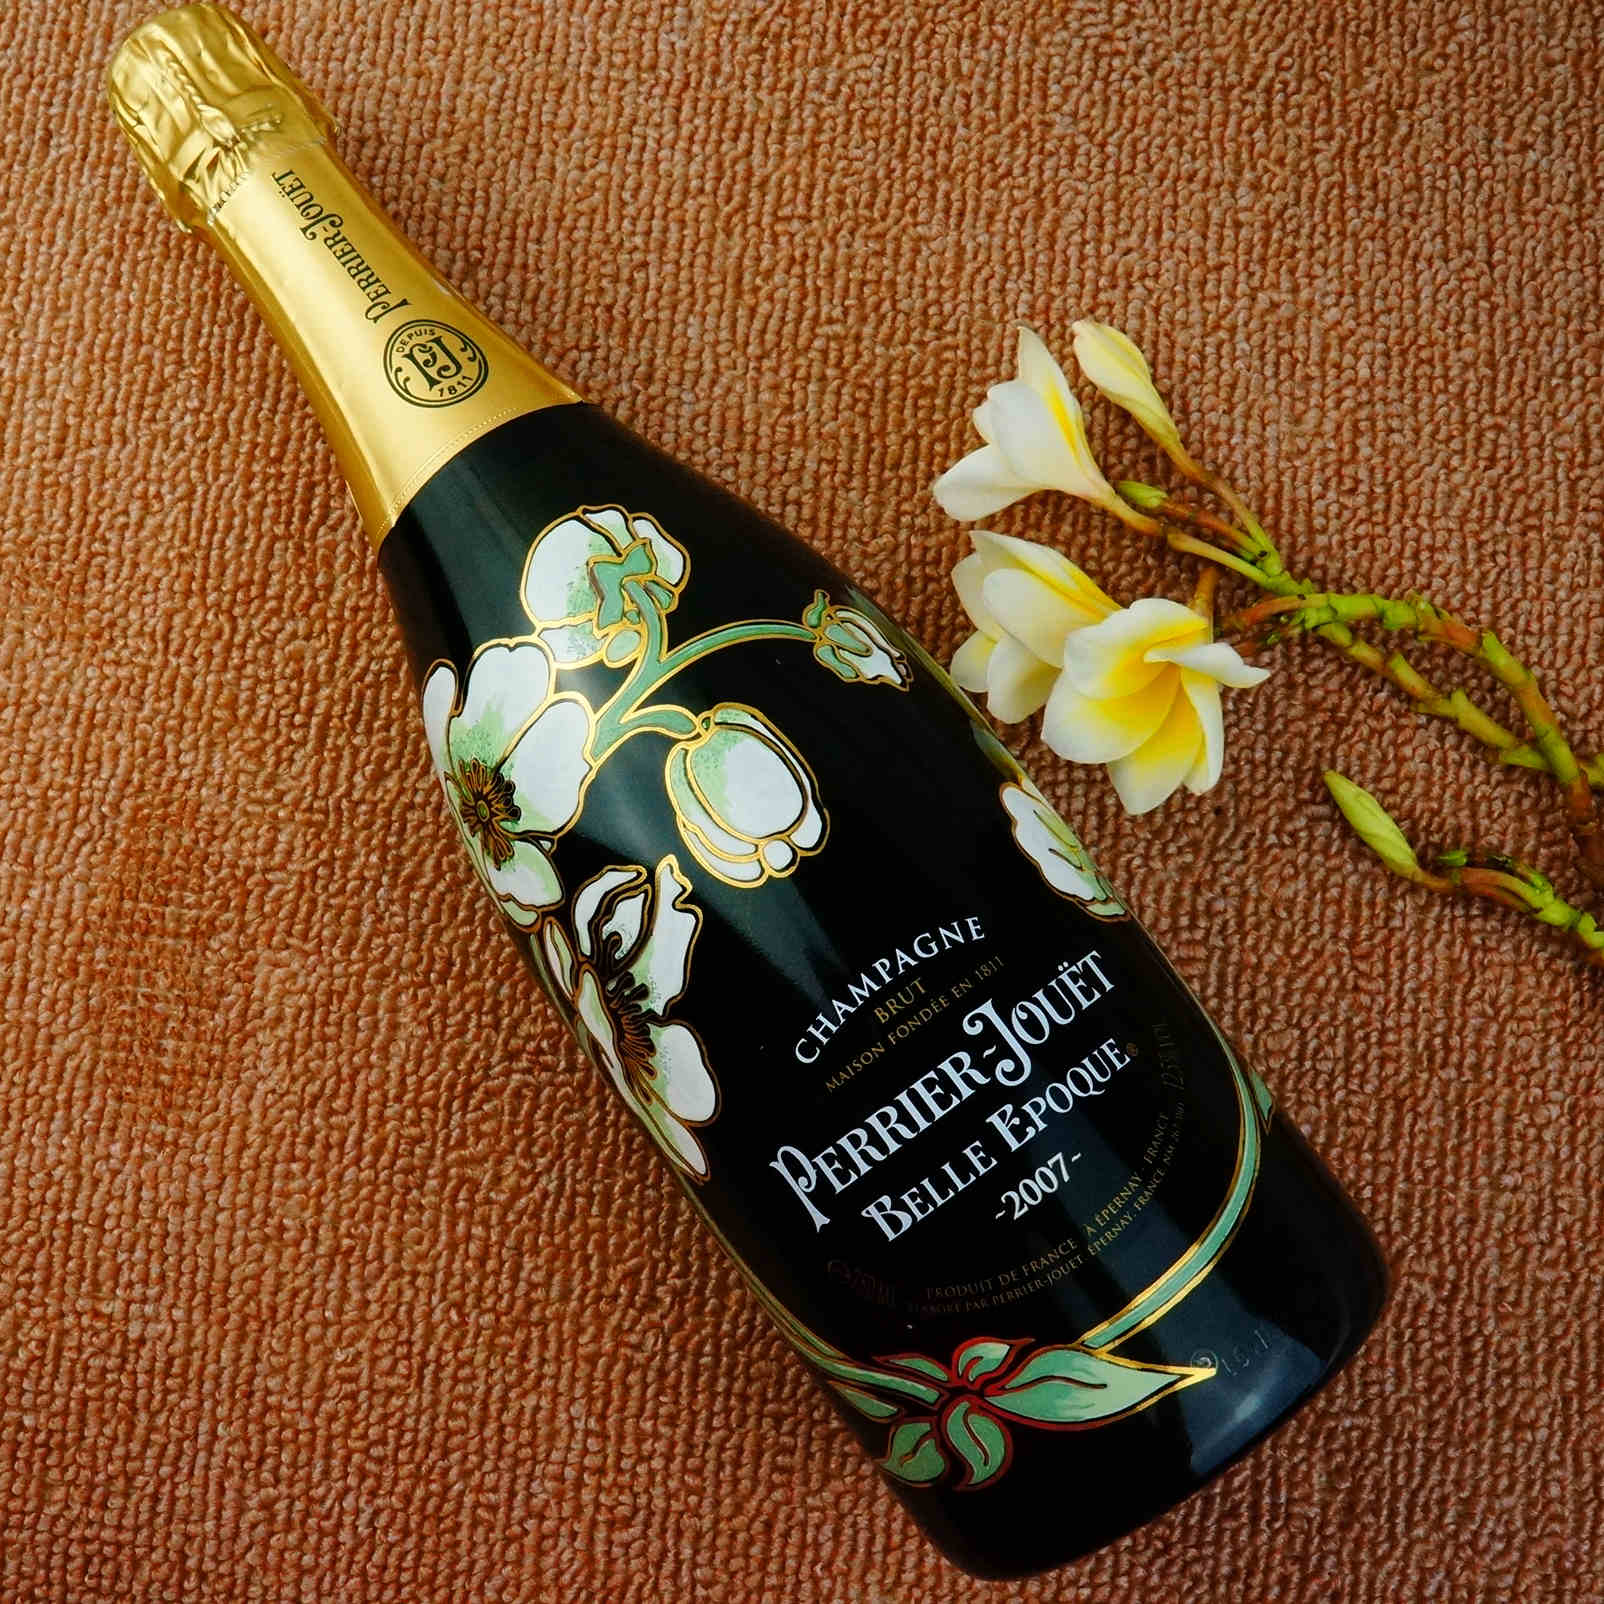 法国巴黎之花美丽时光香槟 perrier jouet belle epoque 2008